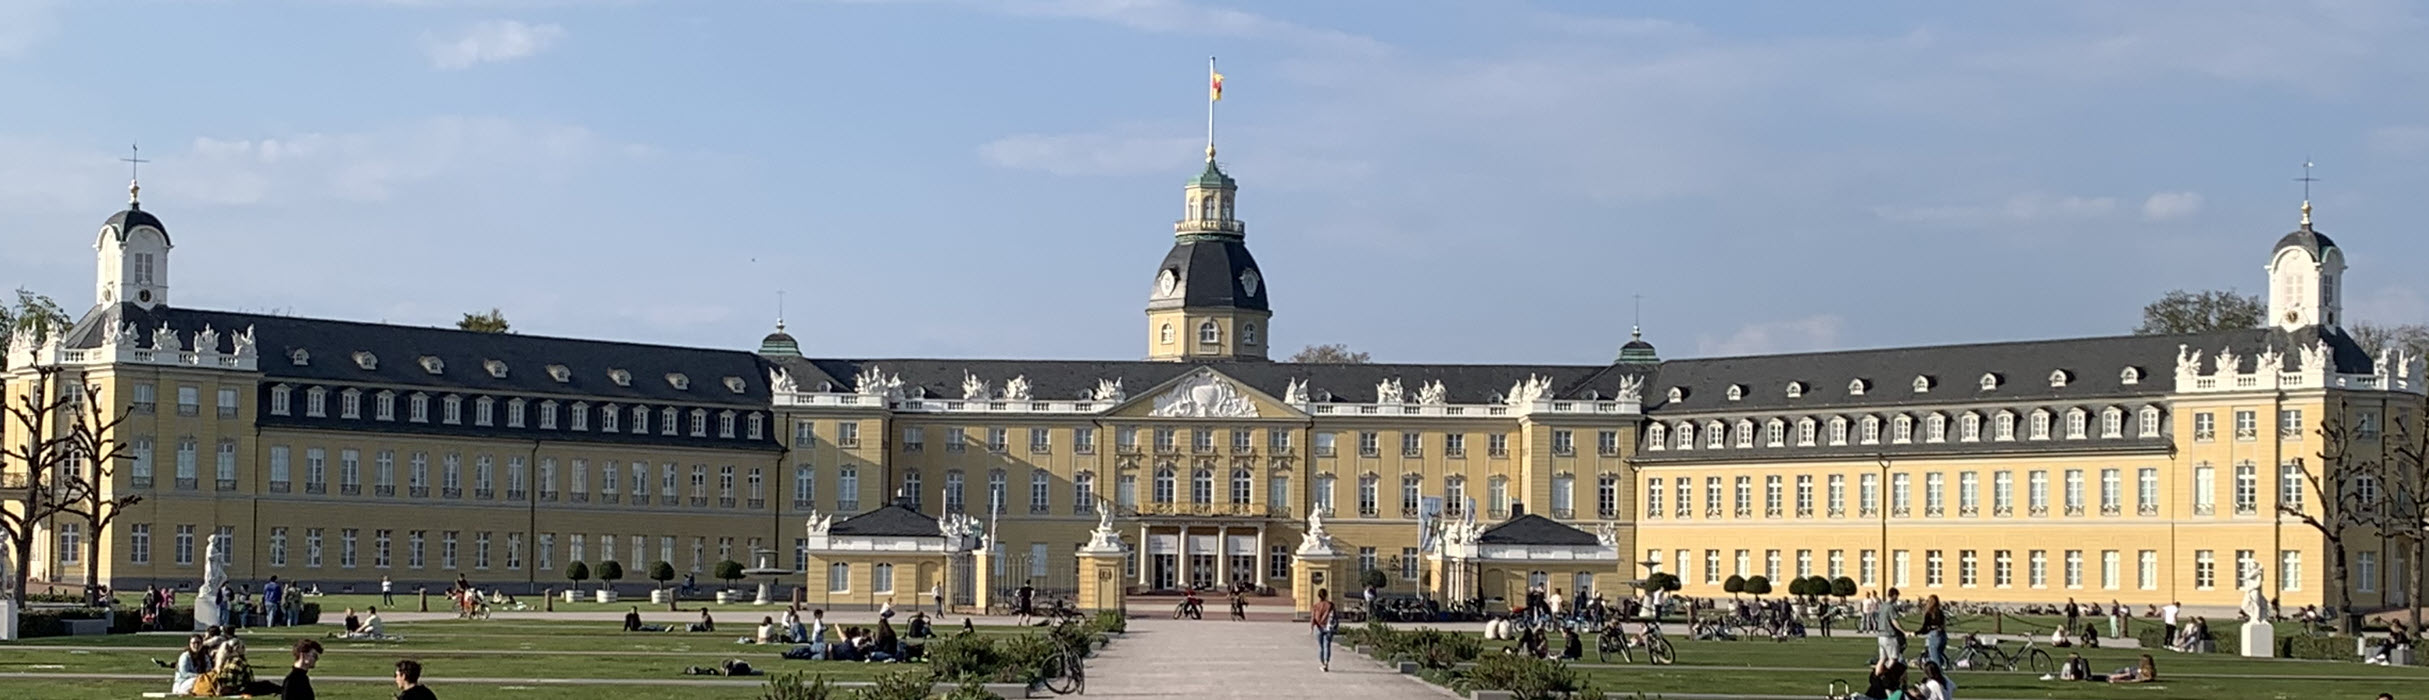 Ansicht Schloss Karlsruhe